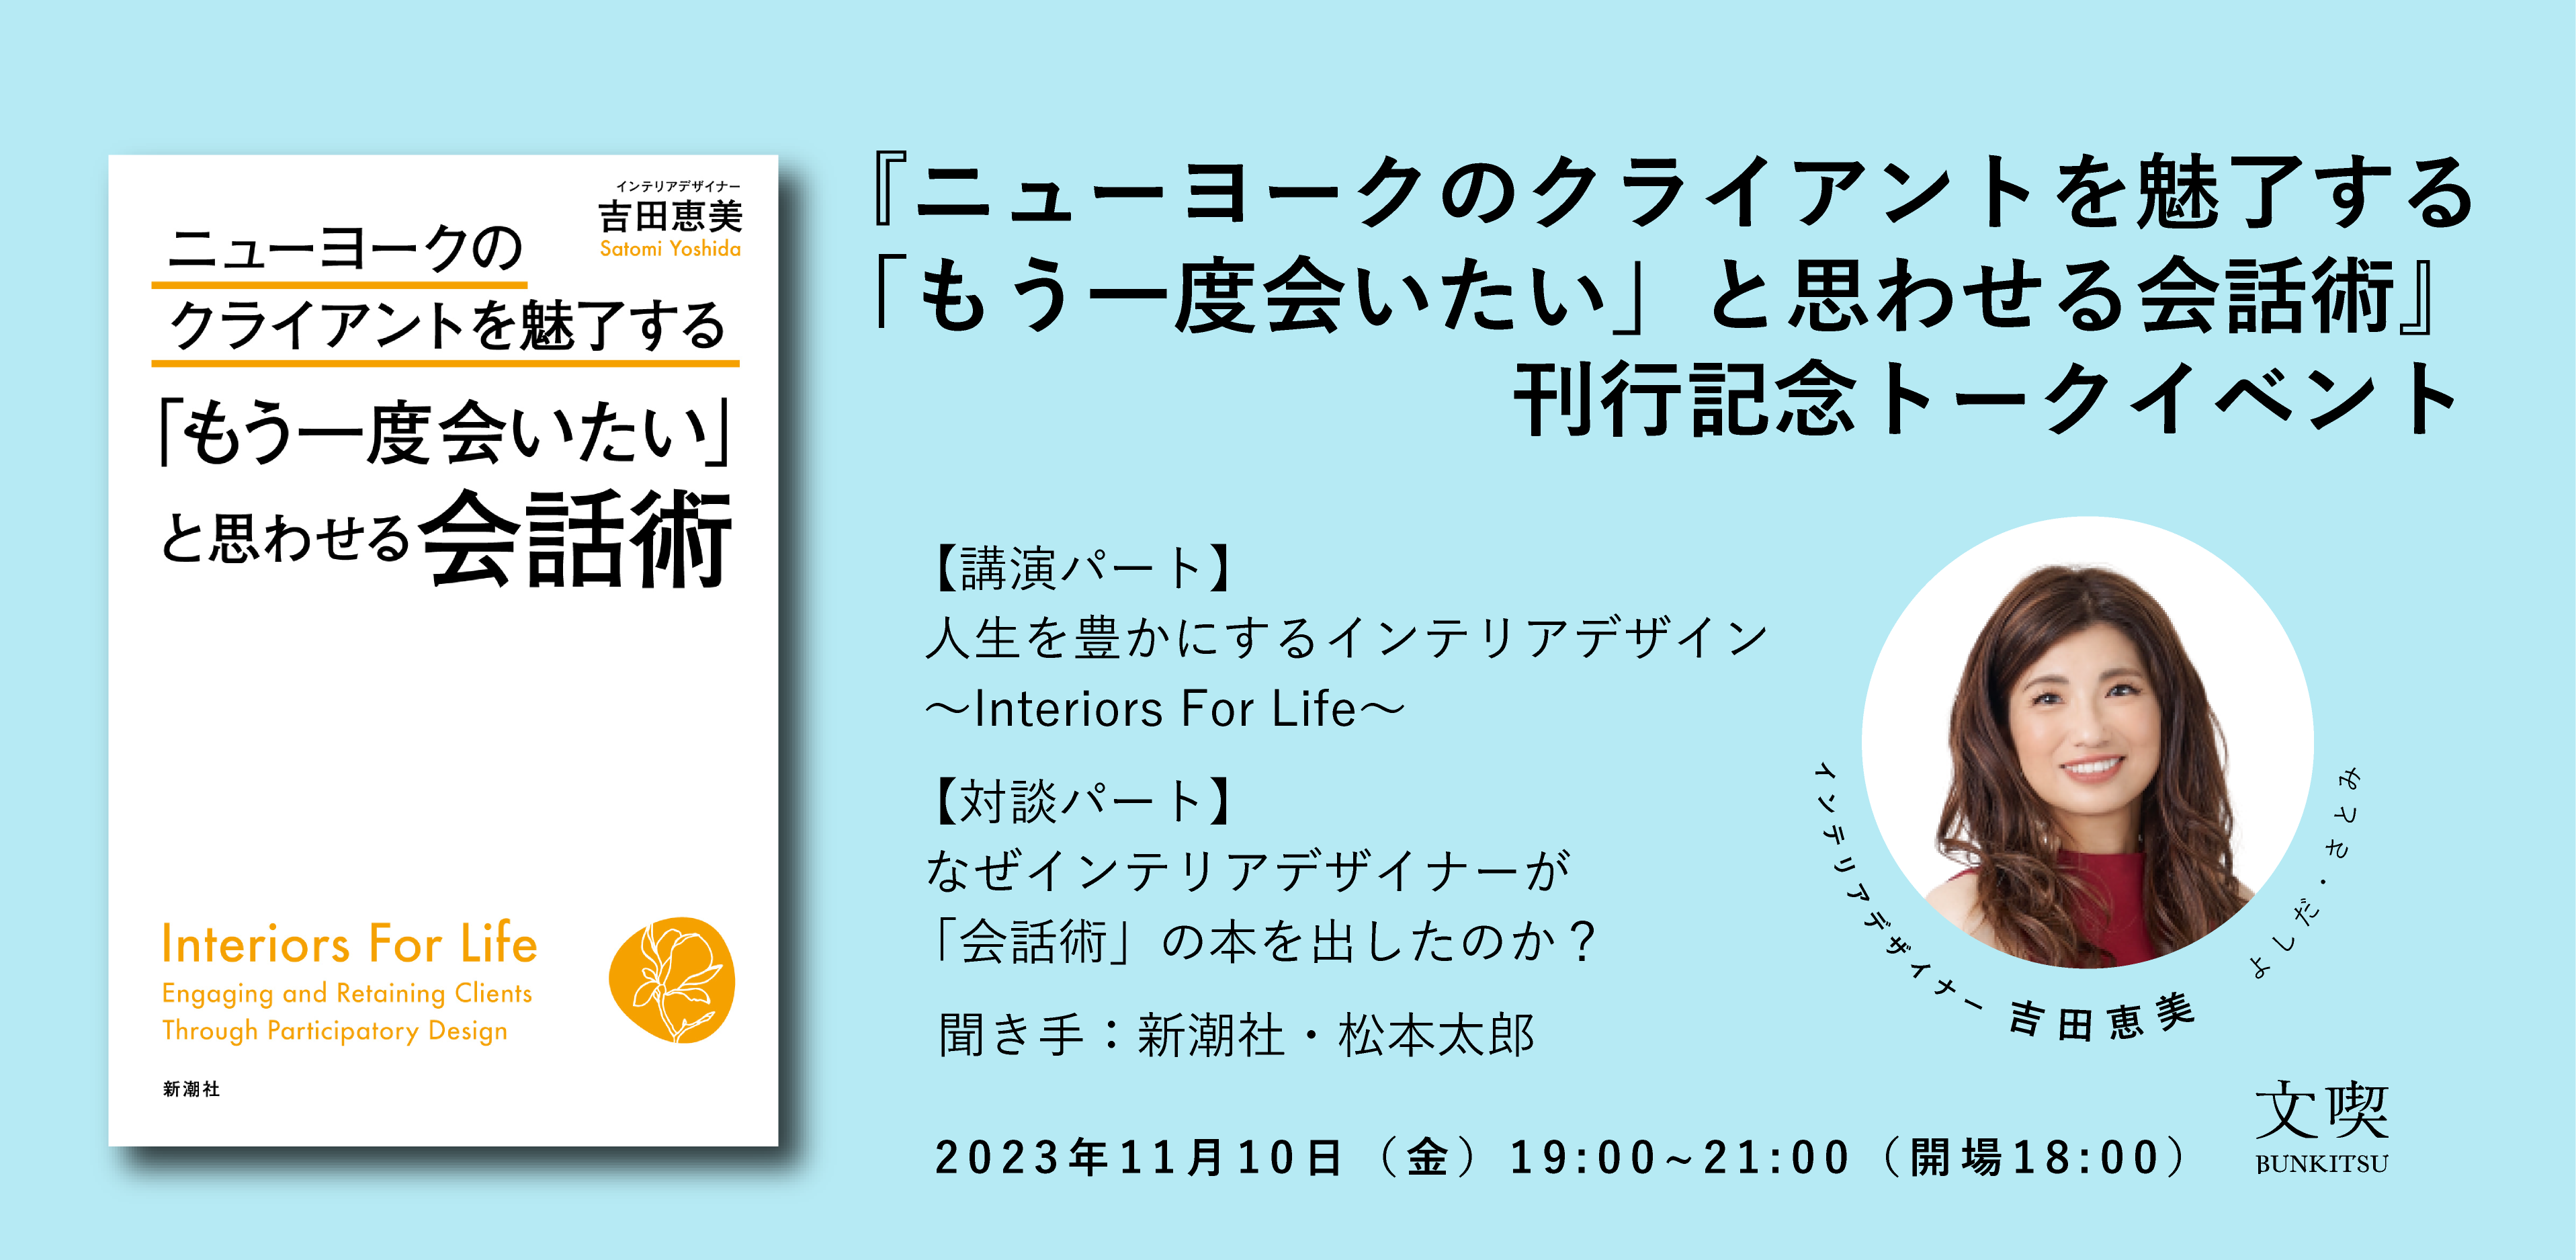 【11月10日】吉田恵美『ニューヨークのクライアントを魅了する「もう一度会いたい」と思わせる会話術』刊行記念トークイベント